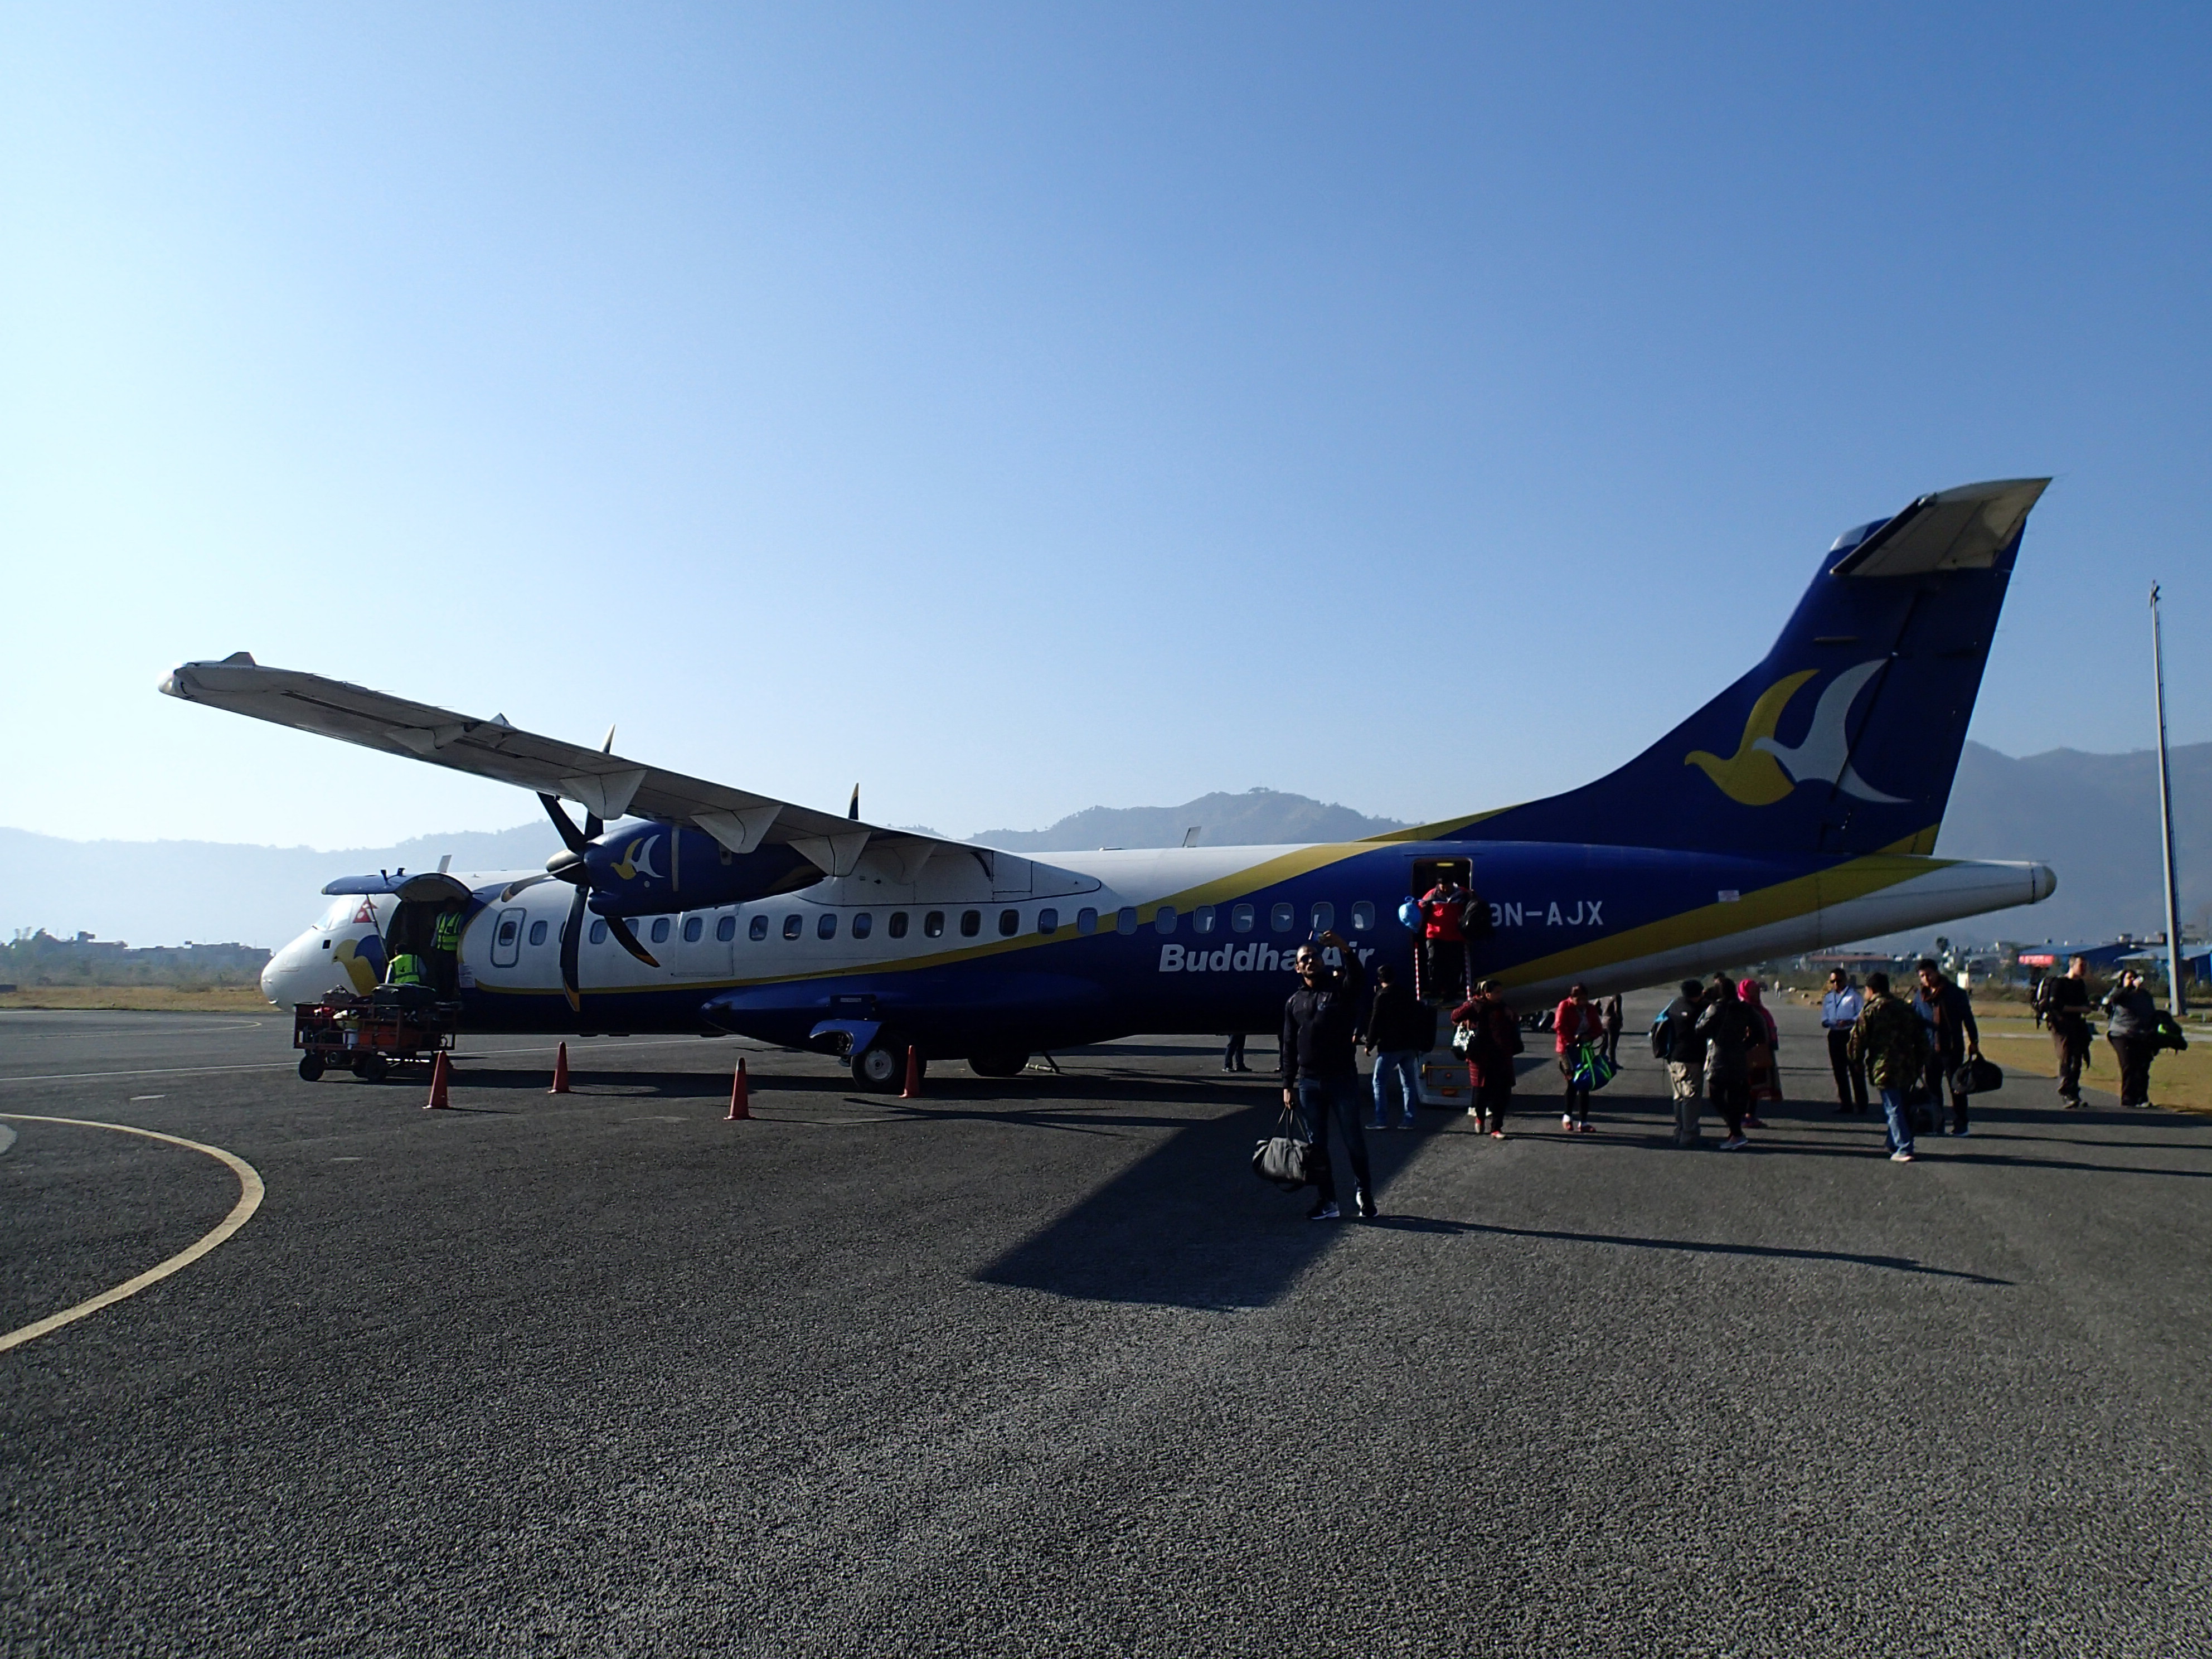 ネパール国内移動 カトマンズ空港からポカラへ 国内線飛行機の乗り方 たびだんご